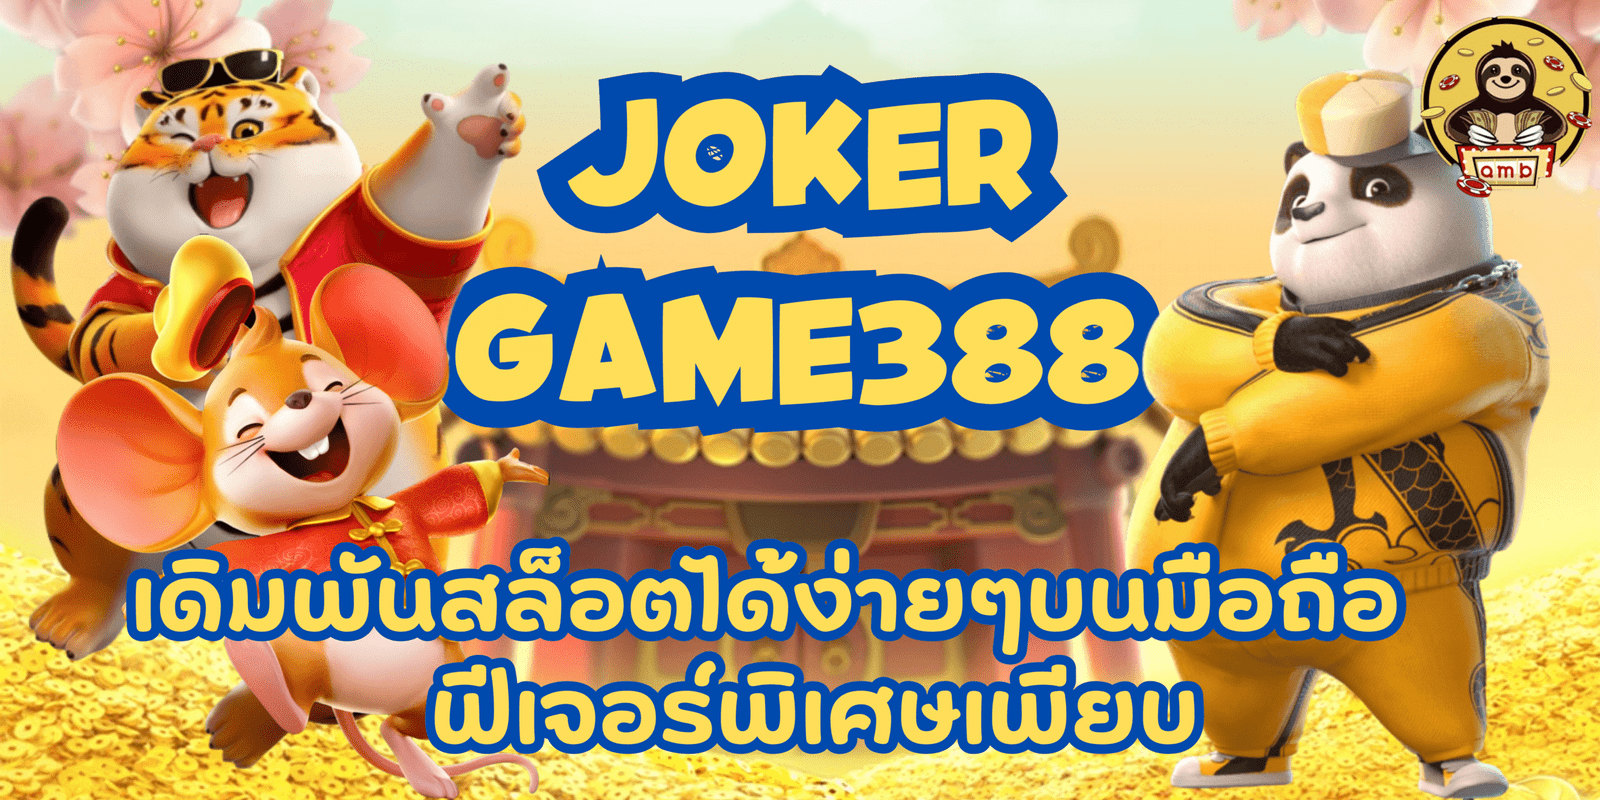 joker-game388-ฟีเจอร์พิเศษเพียบ